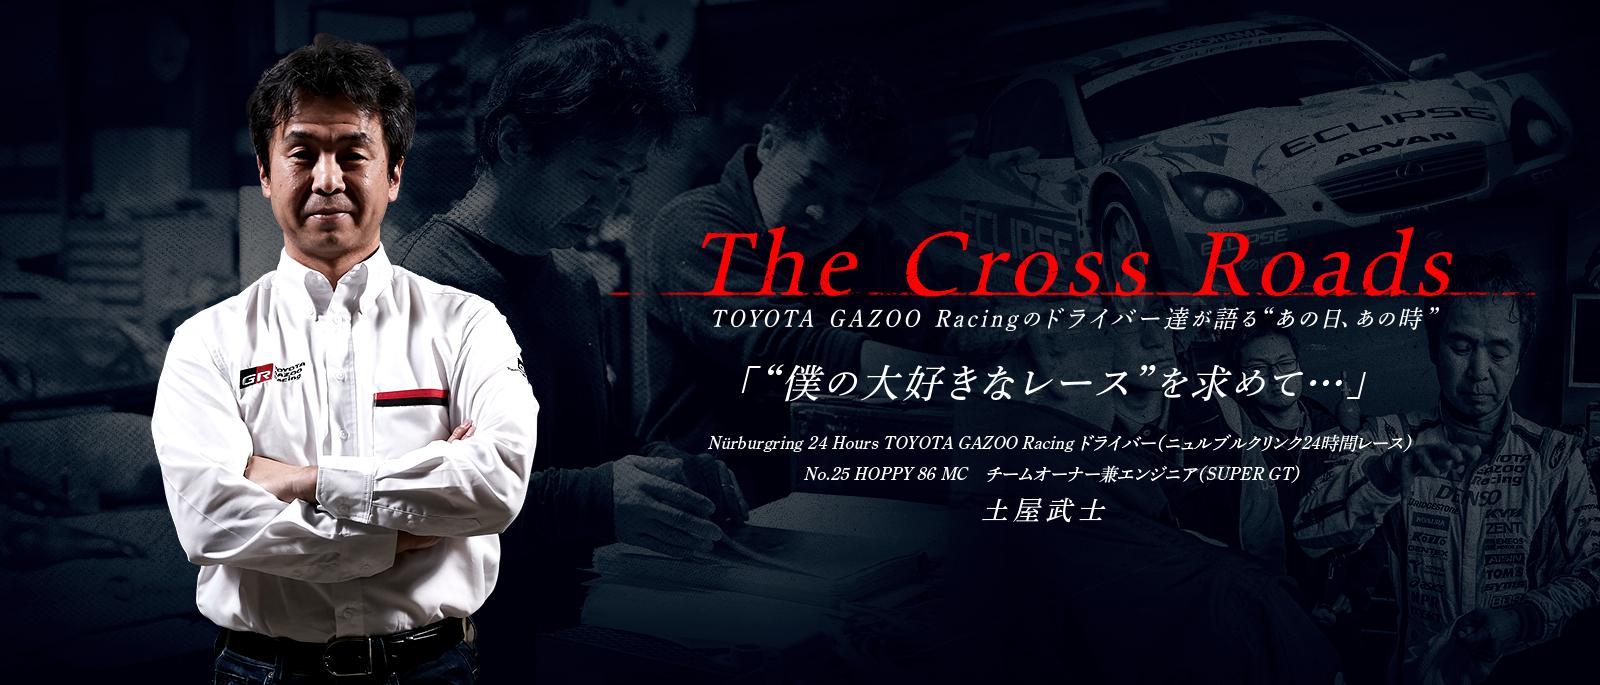 土屋 武士「僕の大好きなレースを求めて...」| The Cross Roads 〜TOYOTA GAZOO Racingのドライバー達が語るあの日、あの時〜